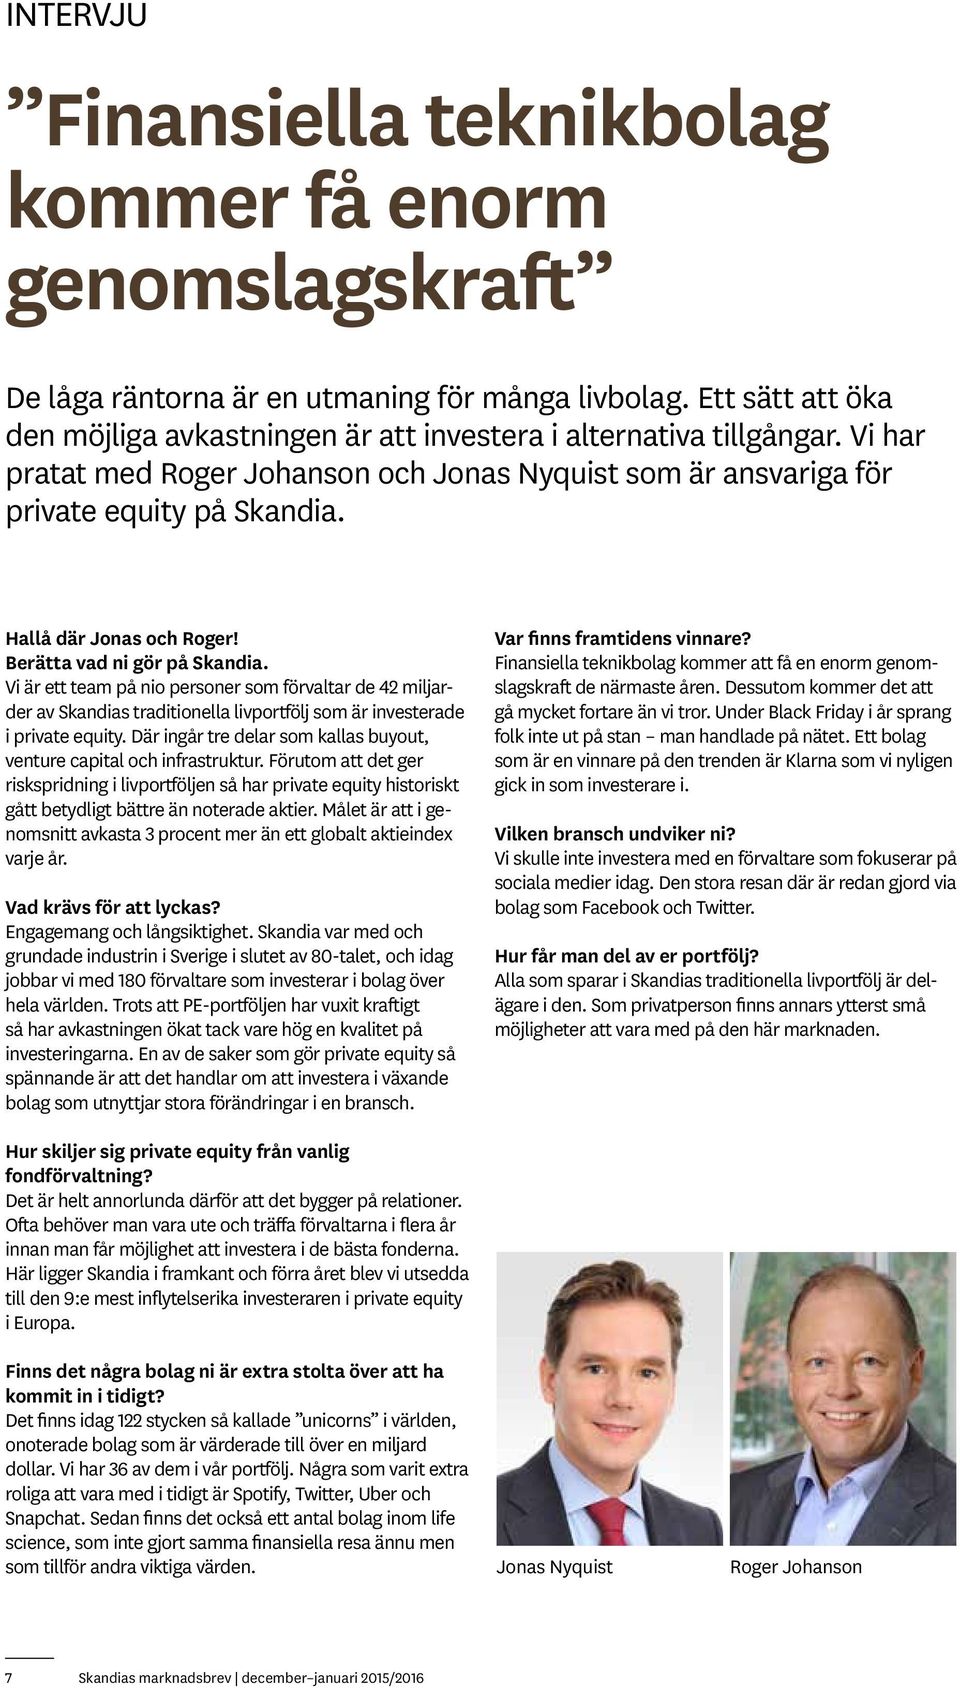 Hallå där Jonas och Roger! Berätta vad ni gör på Skandia. Vi är ett team på nio personer som förvaltar de 42 miljarder av Skandias traditionella livportfölj som är investerade i private equity.